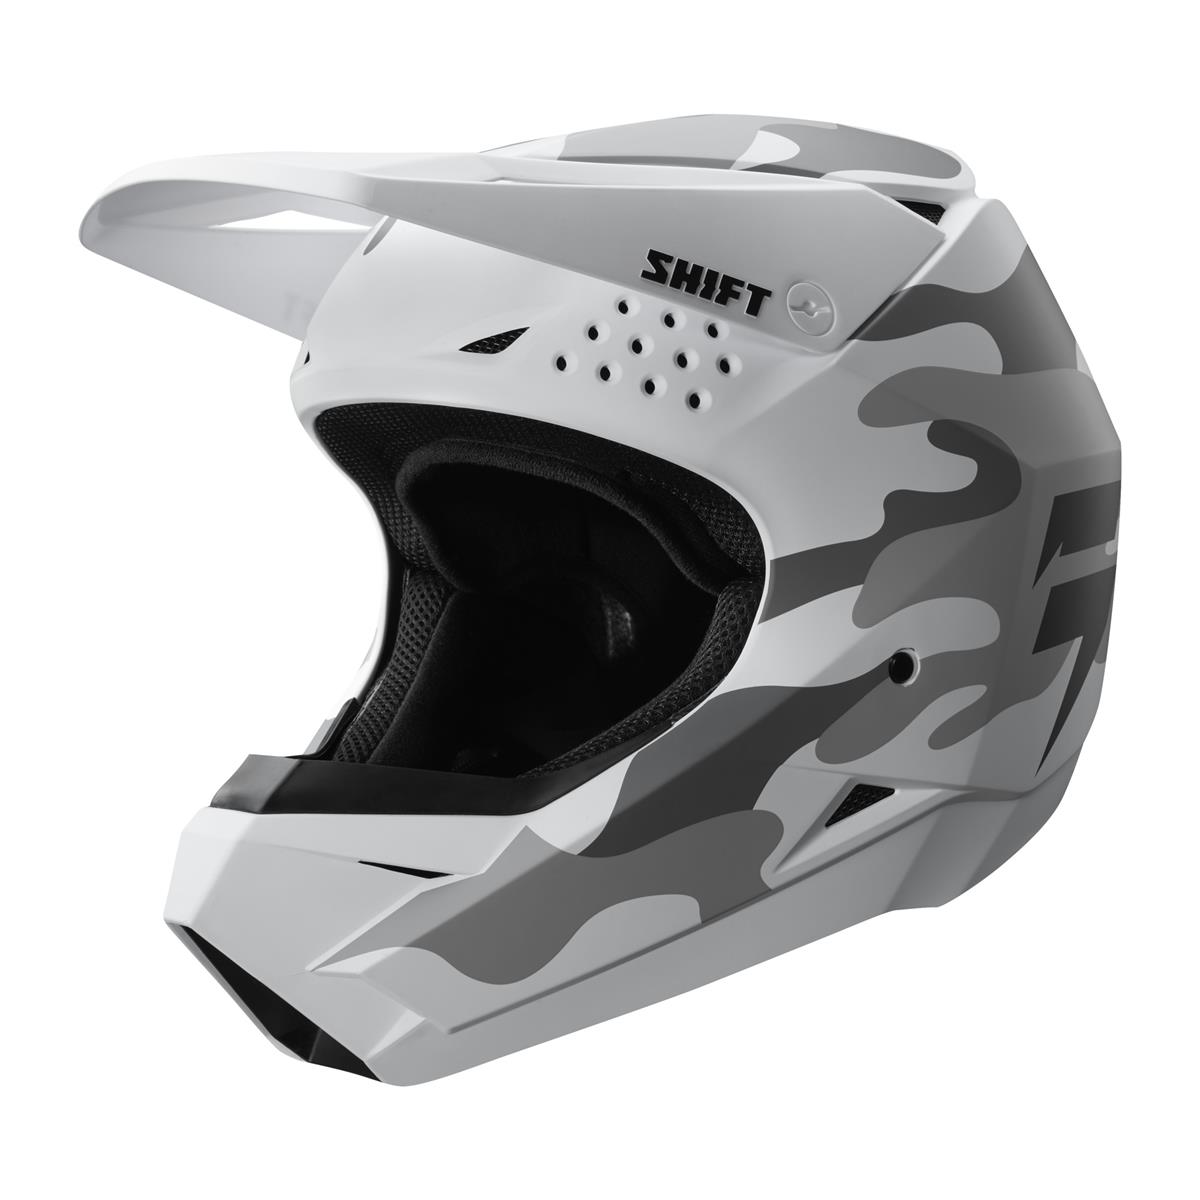 Shift MX Helmet Whit3 Label White/Camo